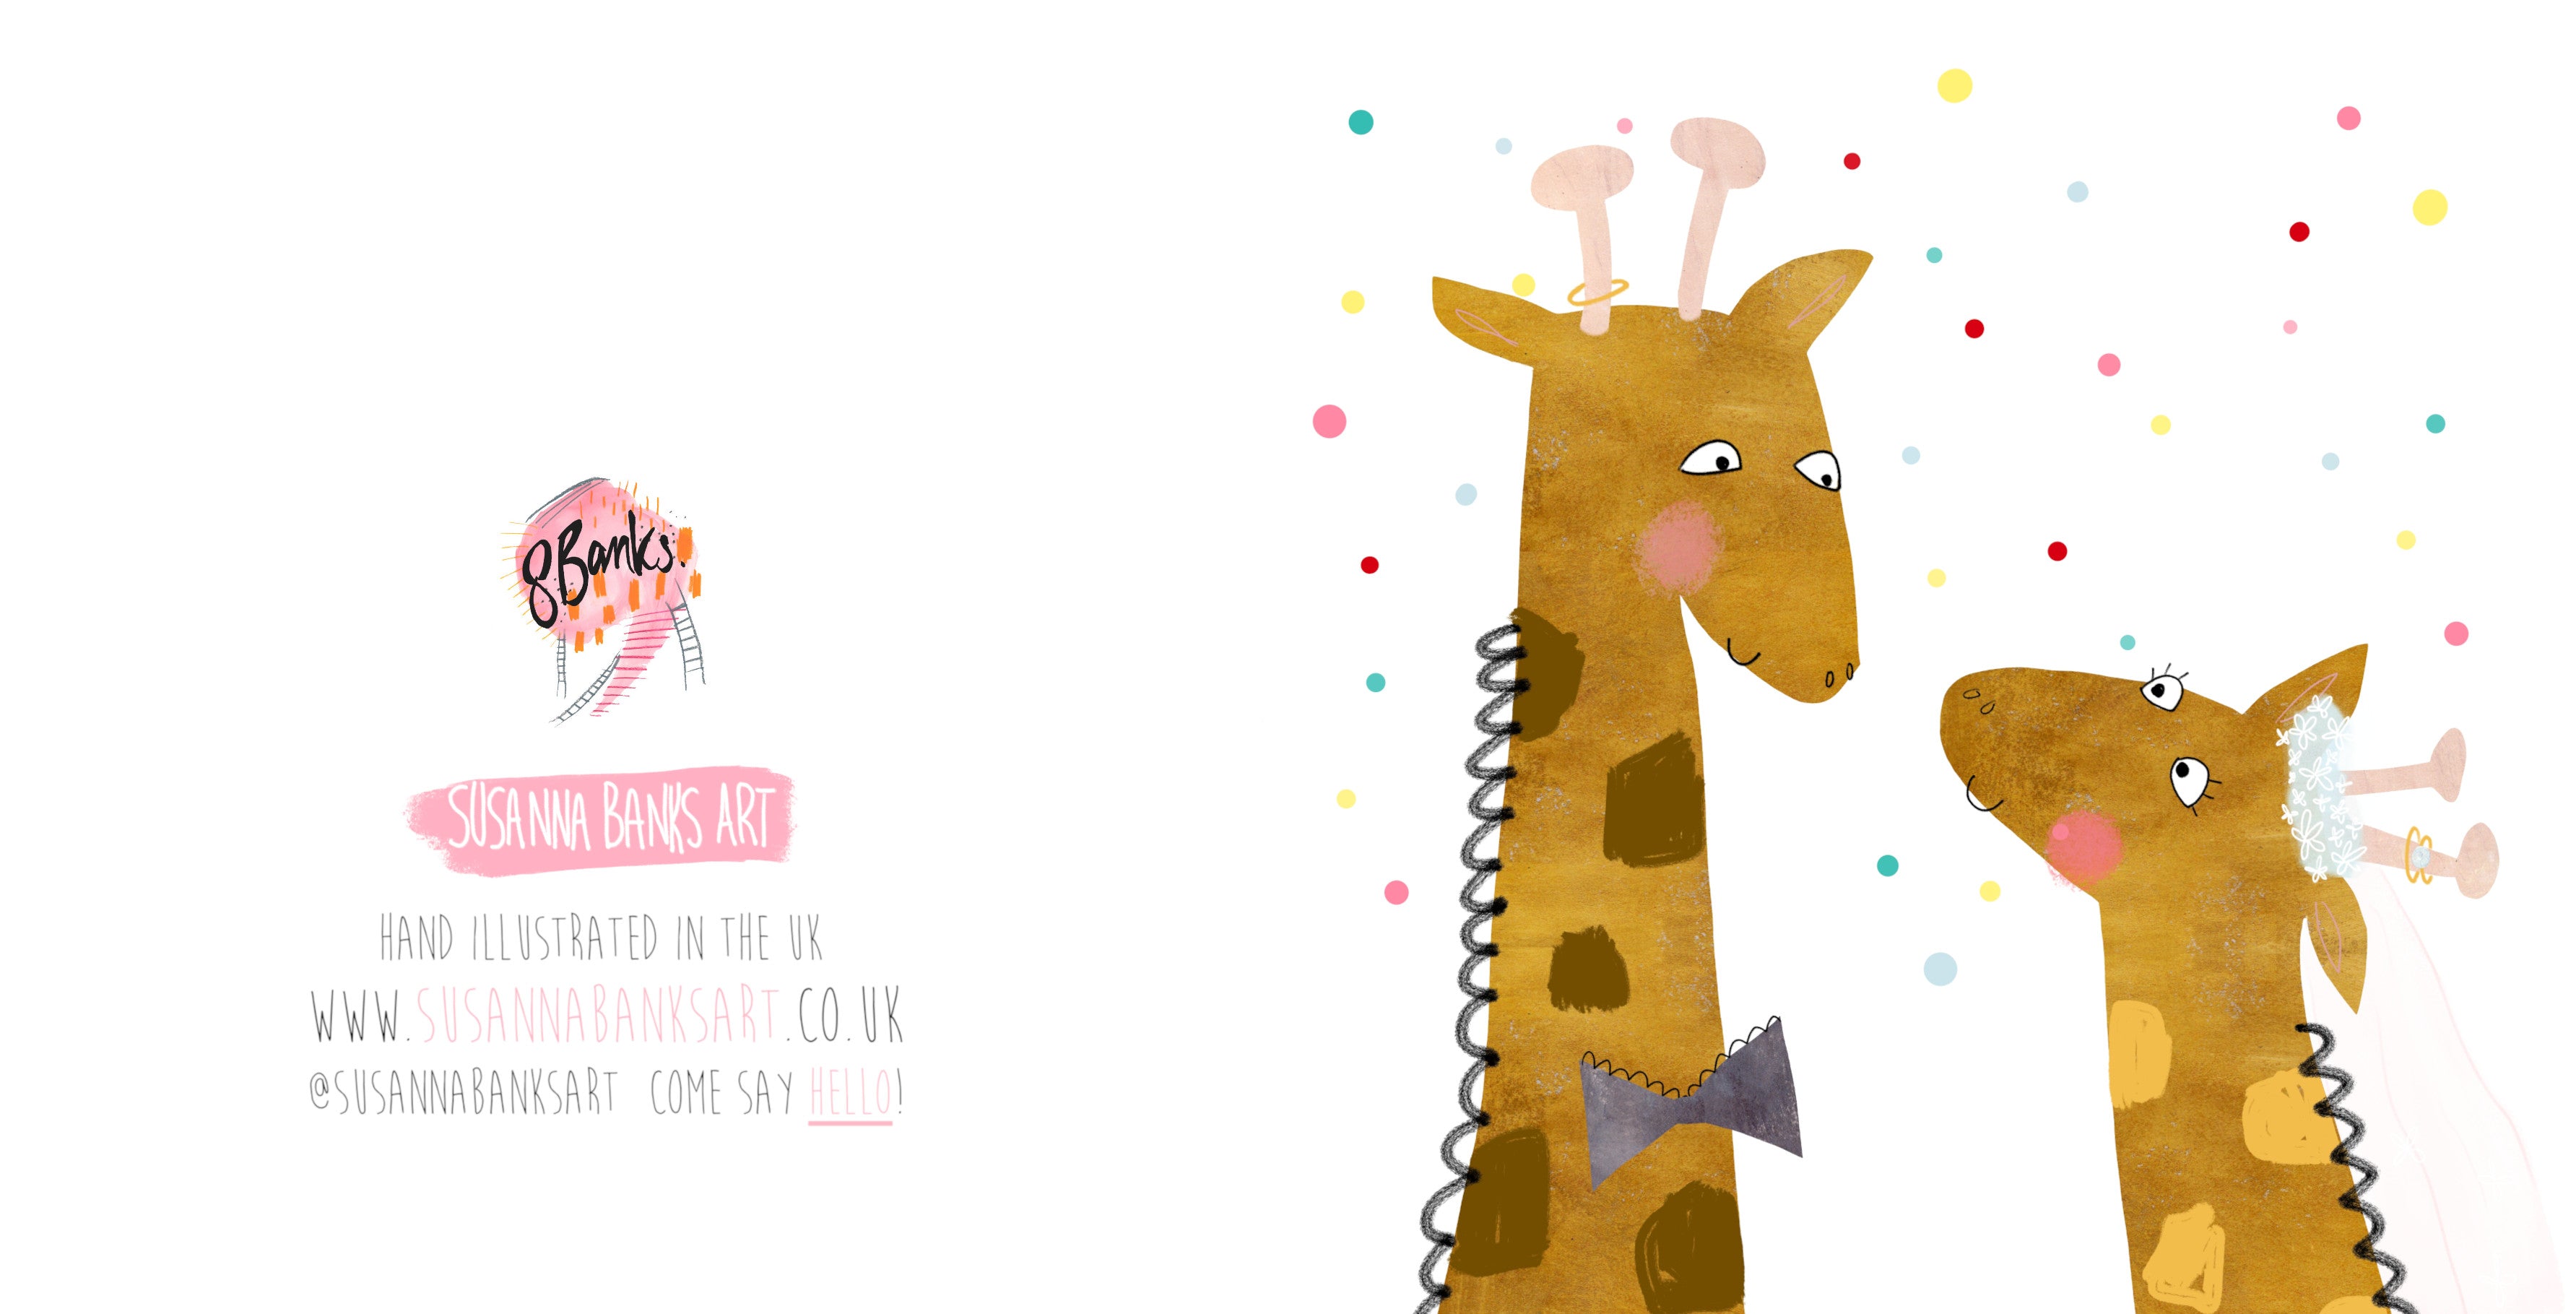 Giraffe Wedding Card